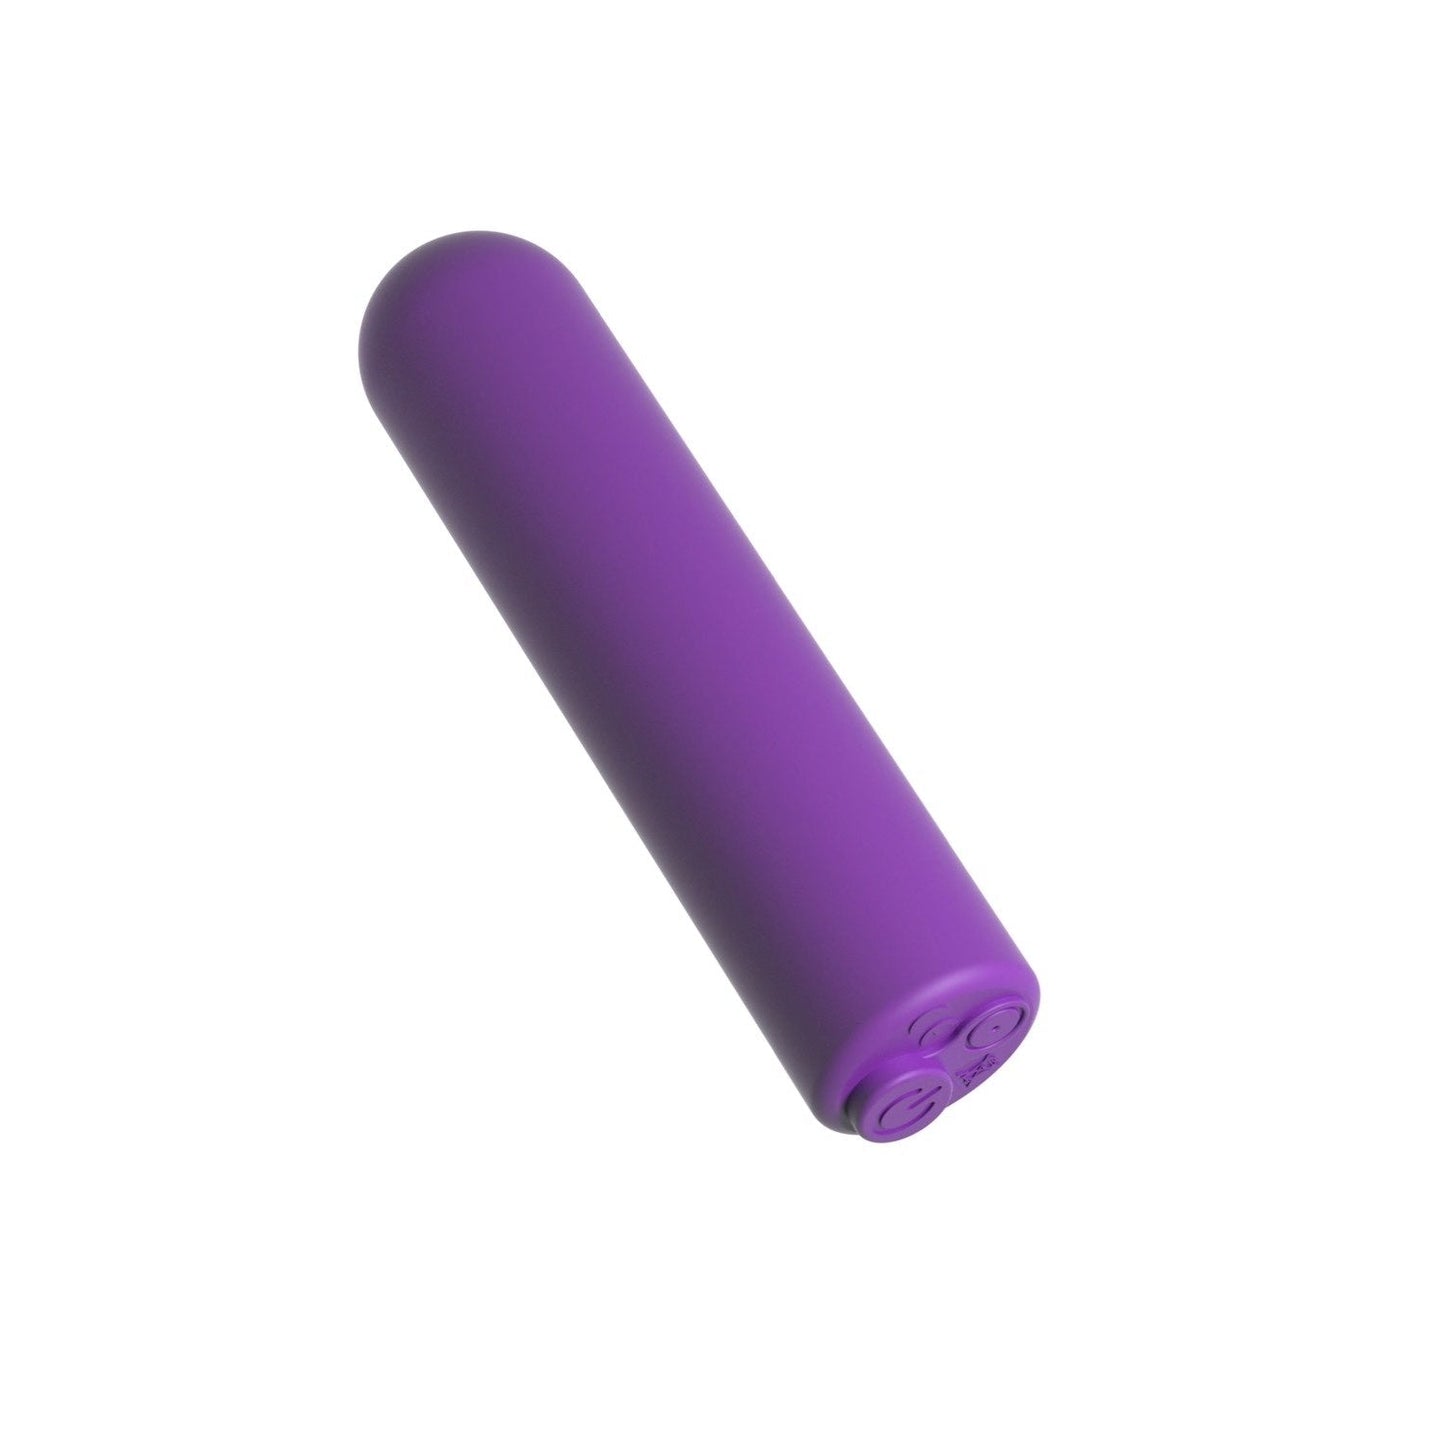 可充电遥控子弹头 - 紫色 USB 可充电子弹头带无线遥控